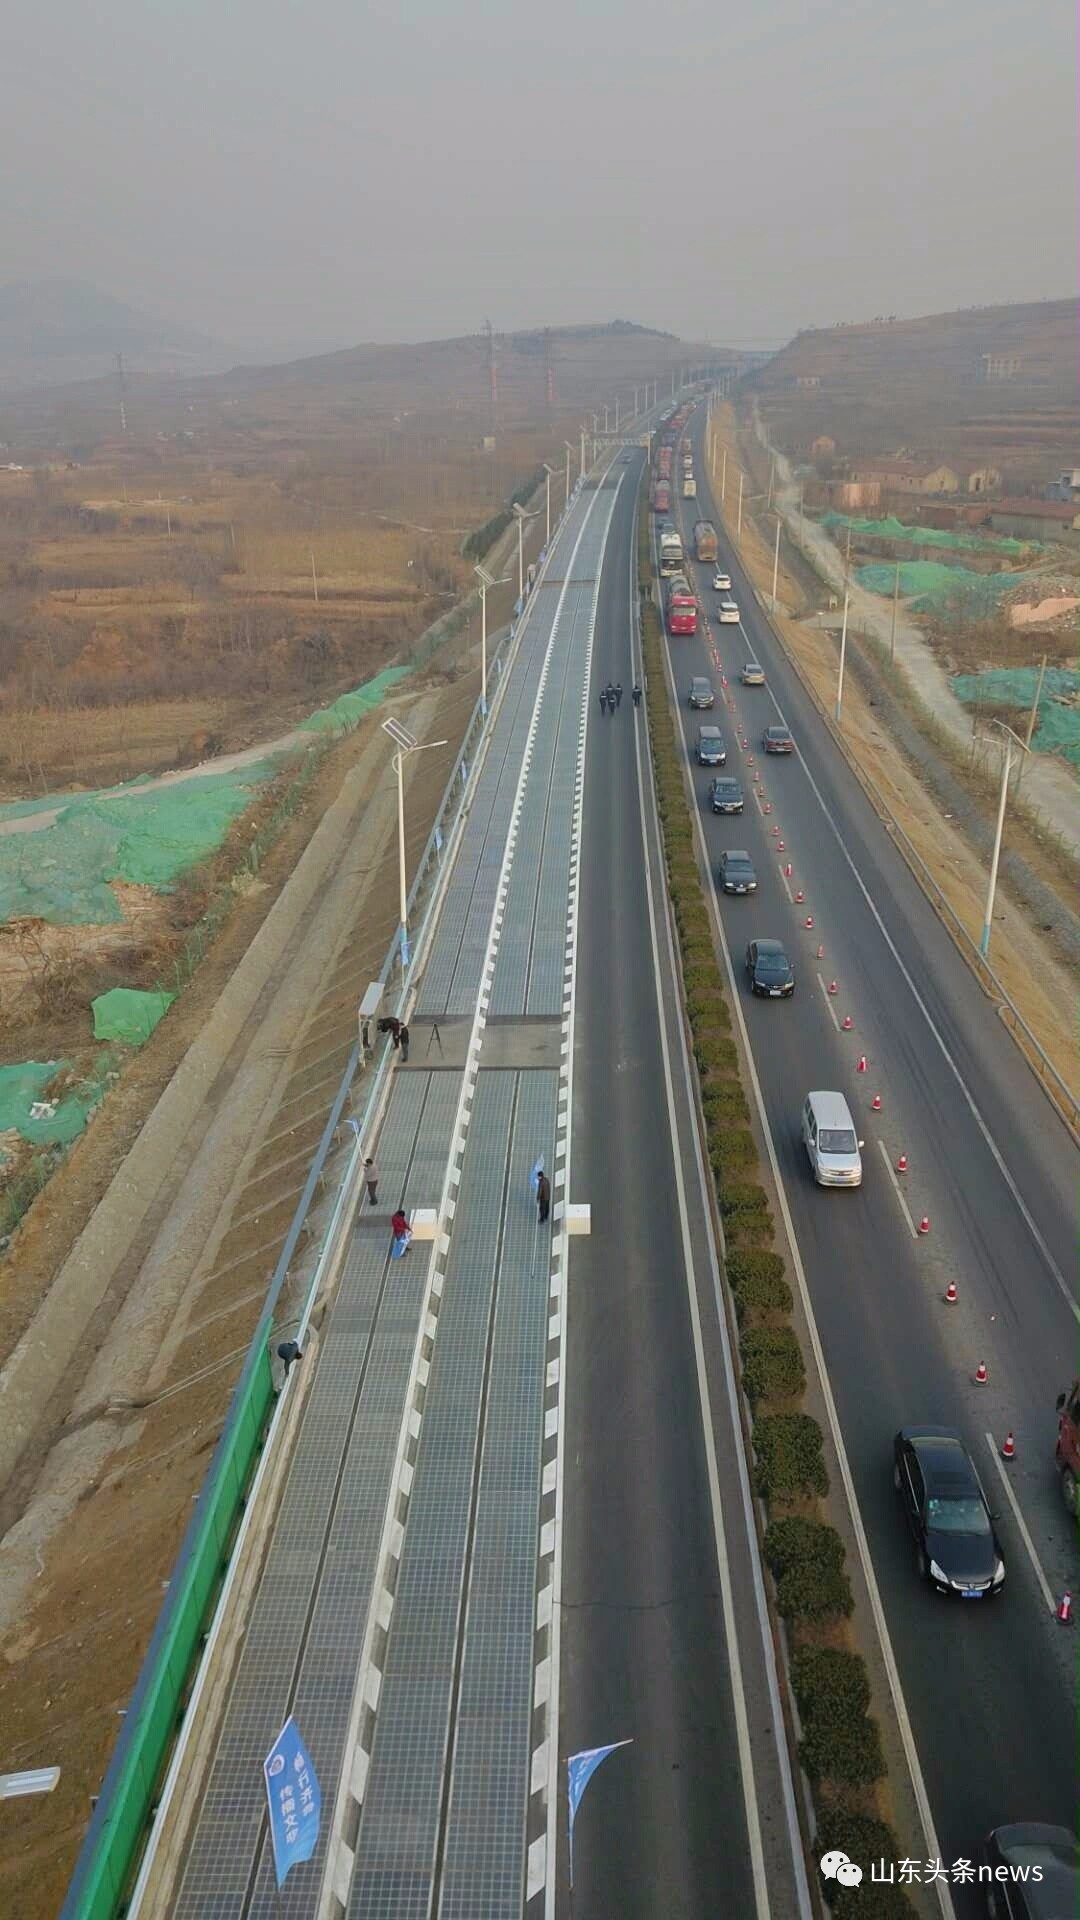 12月28日,世界首条高速公路光伏路面试验段在山东济南通车